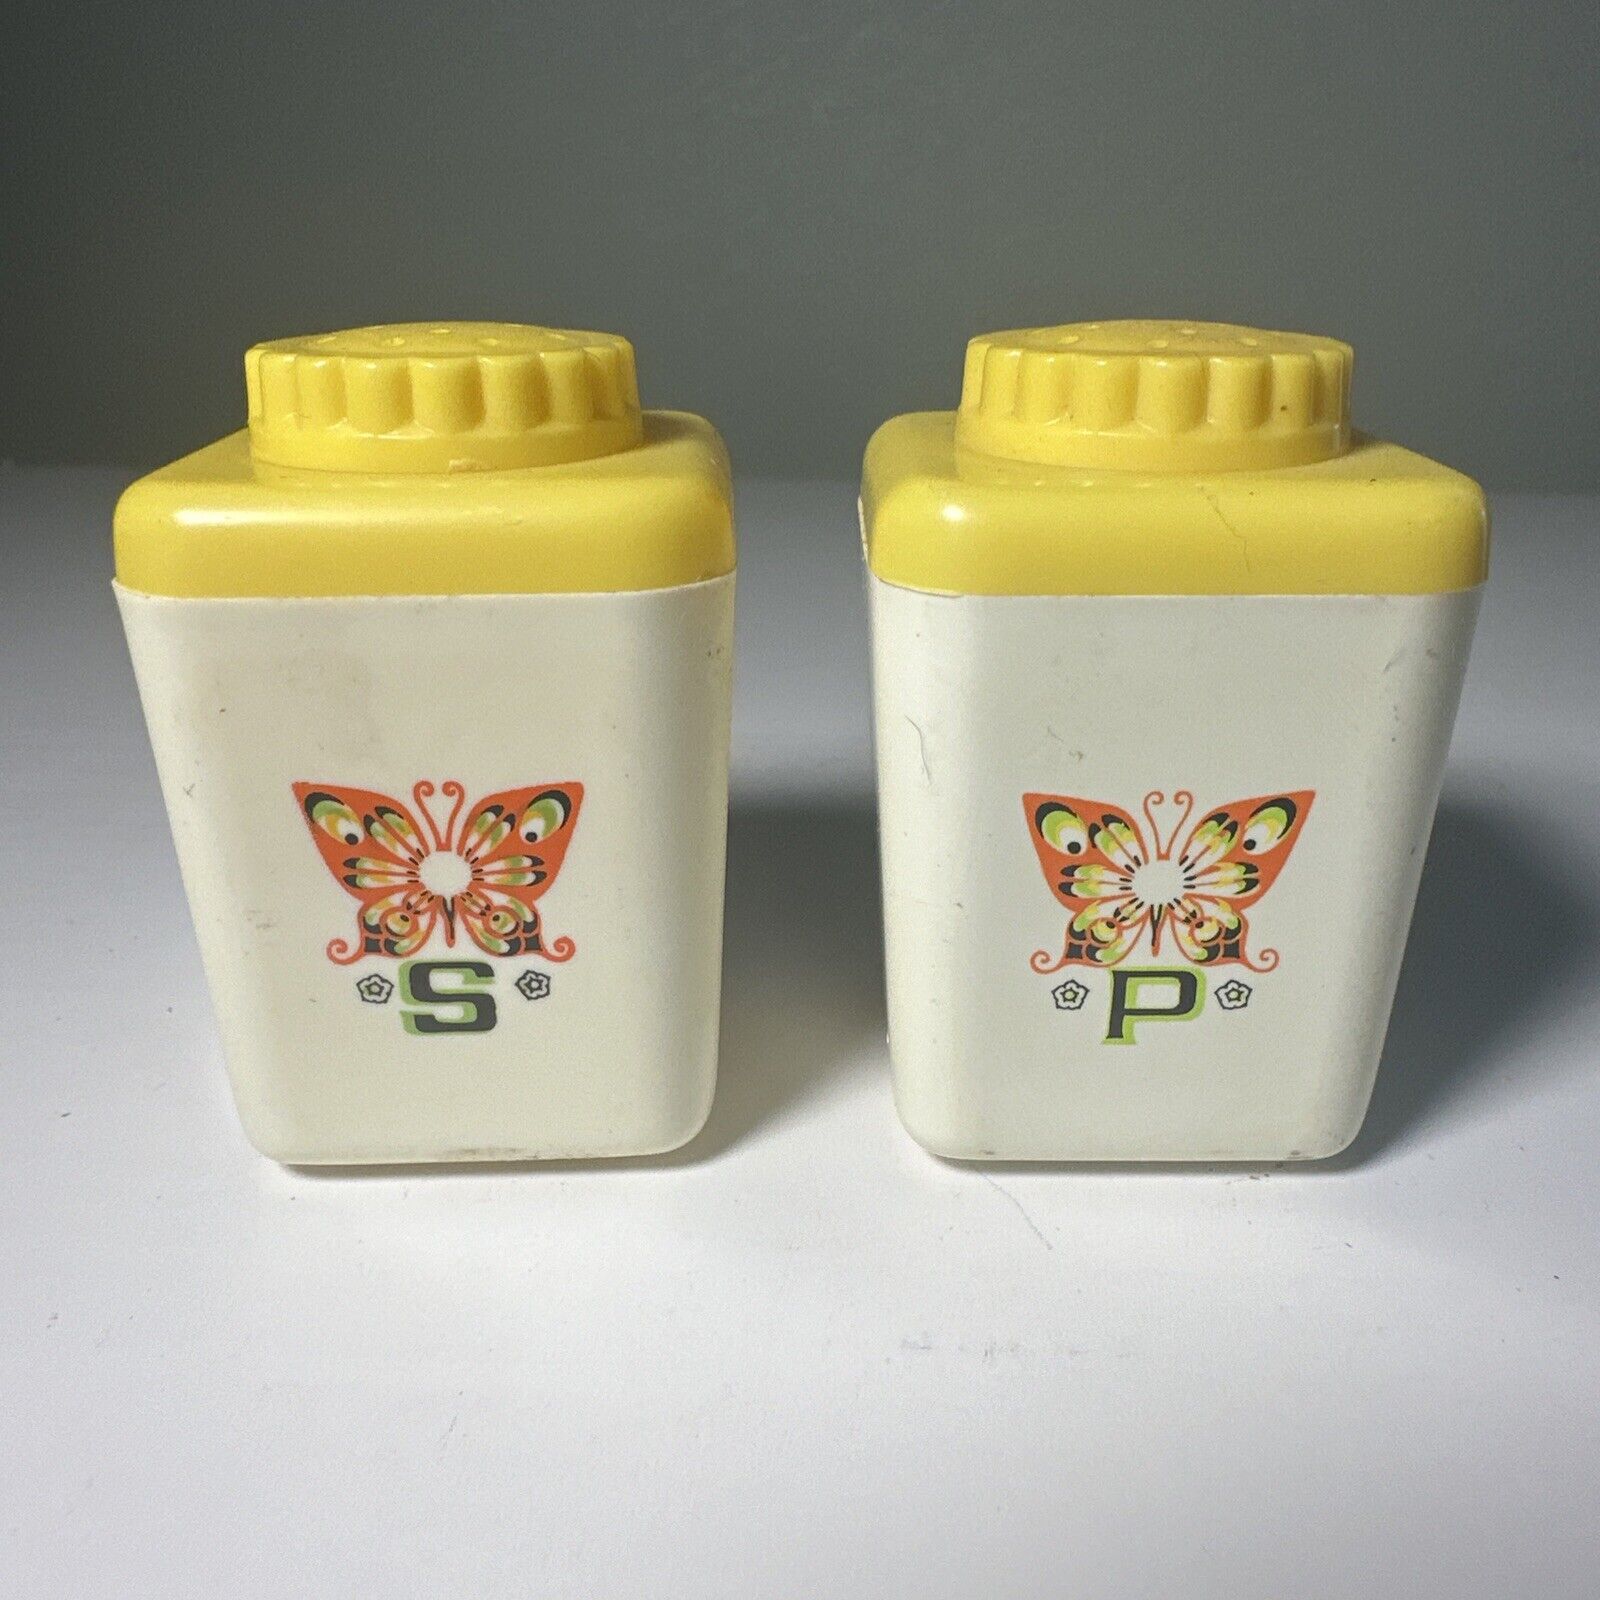 Vintage STERILITE Plastic Salt & Pepper Shaker Set BUTTERFLY 1970's Retro Yellow